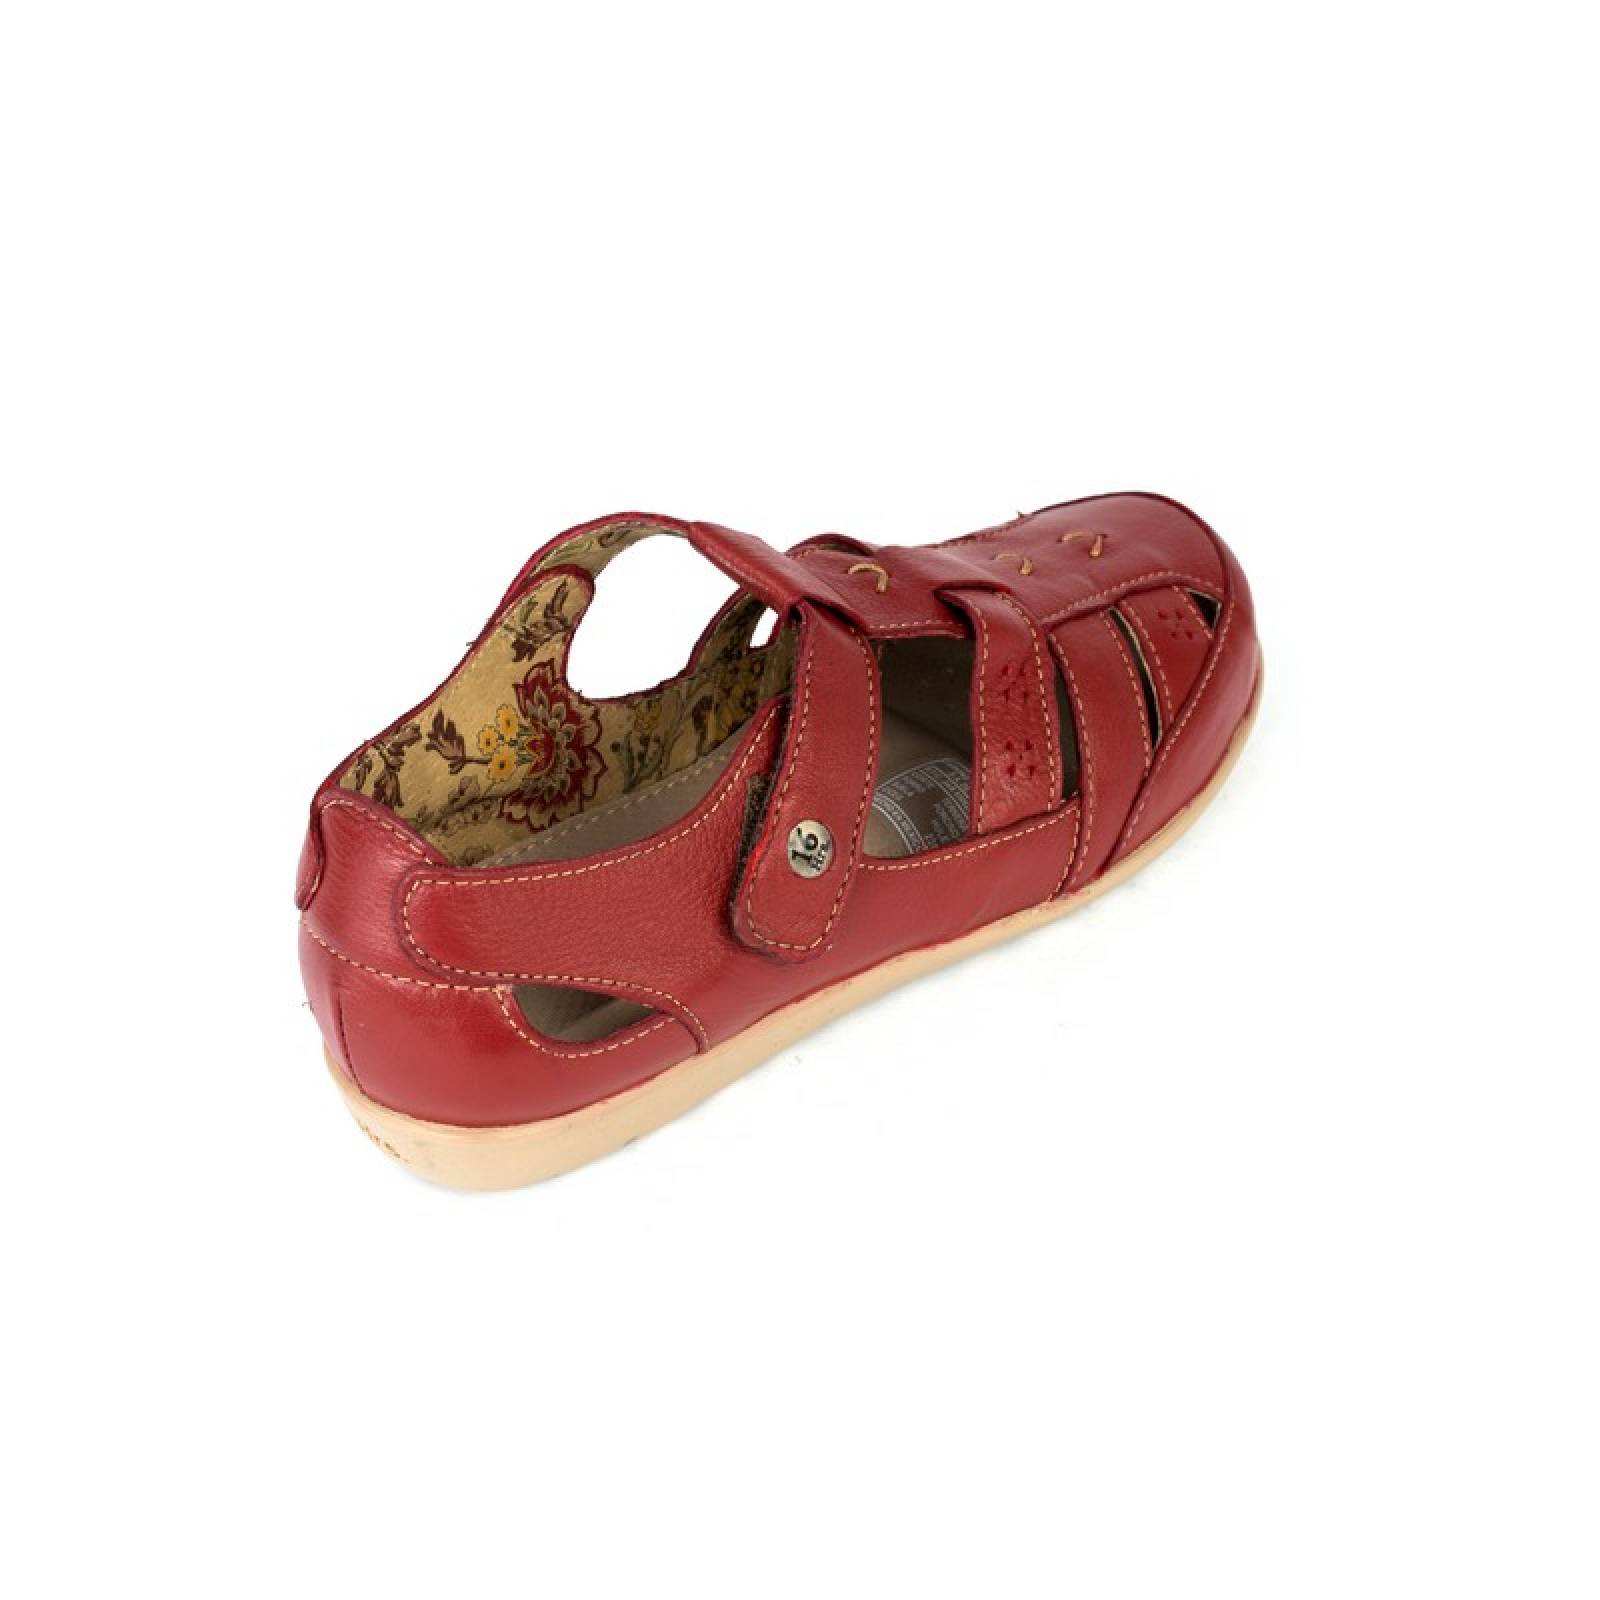 Jarking - Sandalia Casual Rojo con Velcro Detalle Tejido y Perforado para Dama